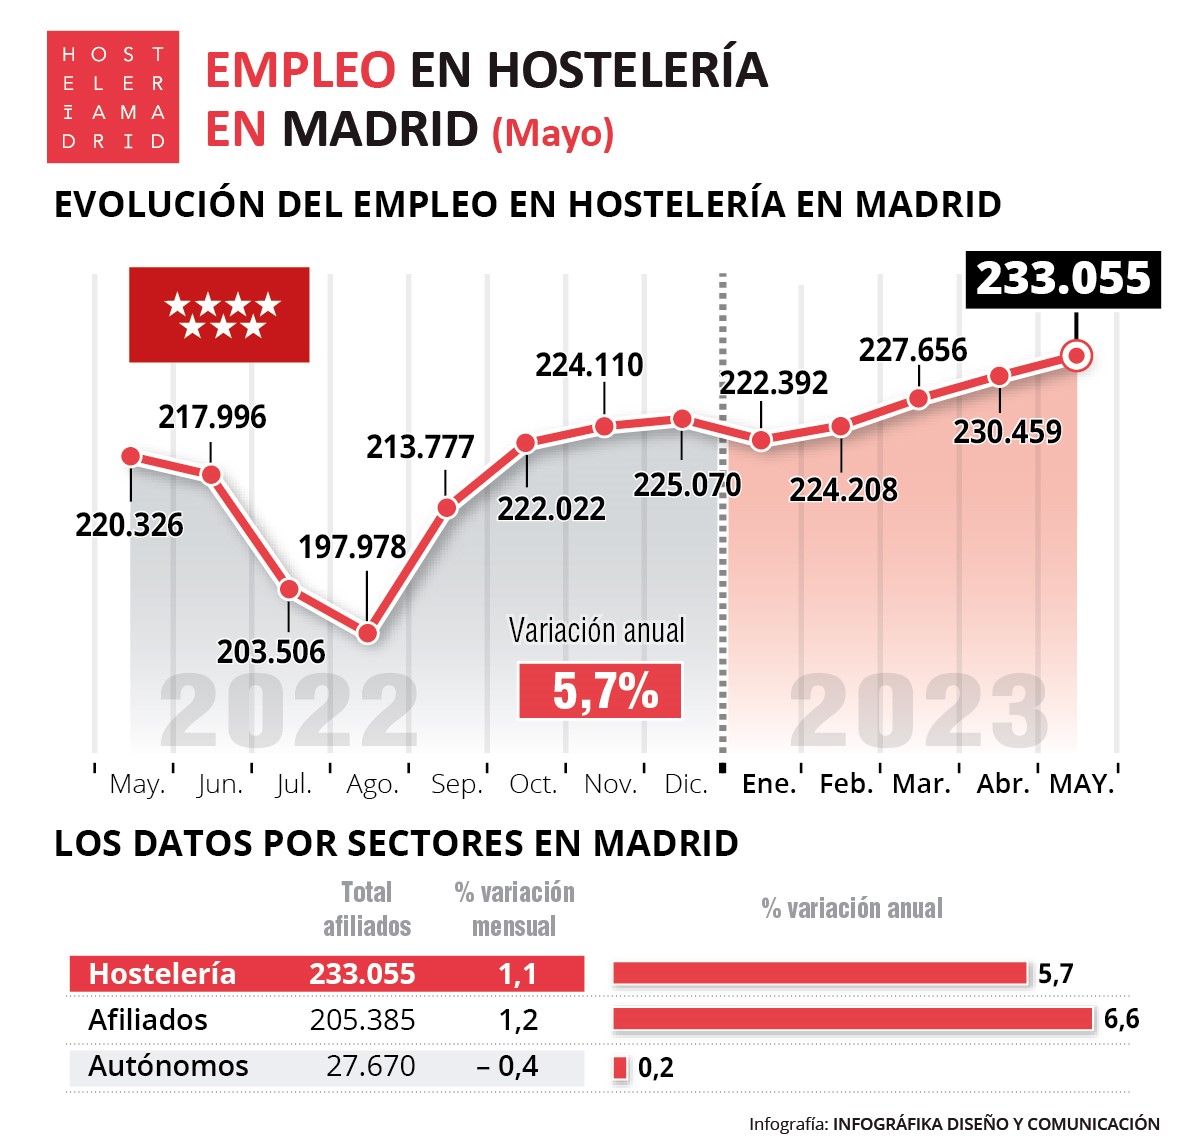 La hostelería de Madrid registra en mayo 233.055 trabajadores, un 5,8% más que el año anterior - La Viña